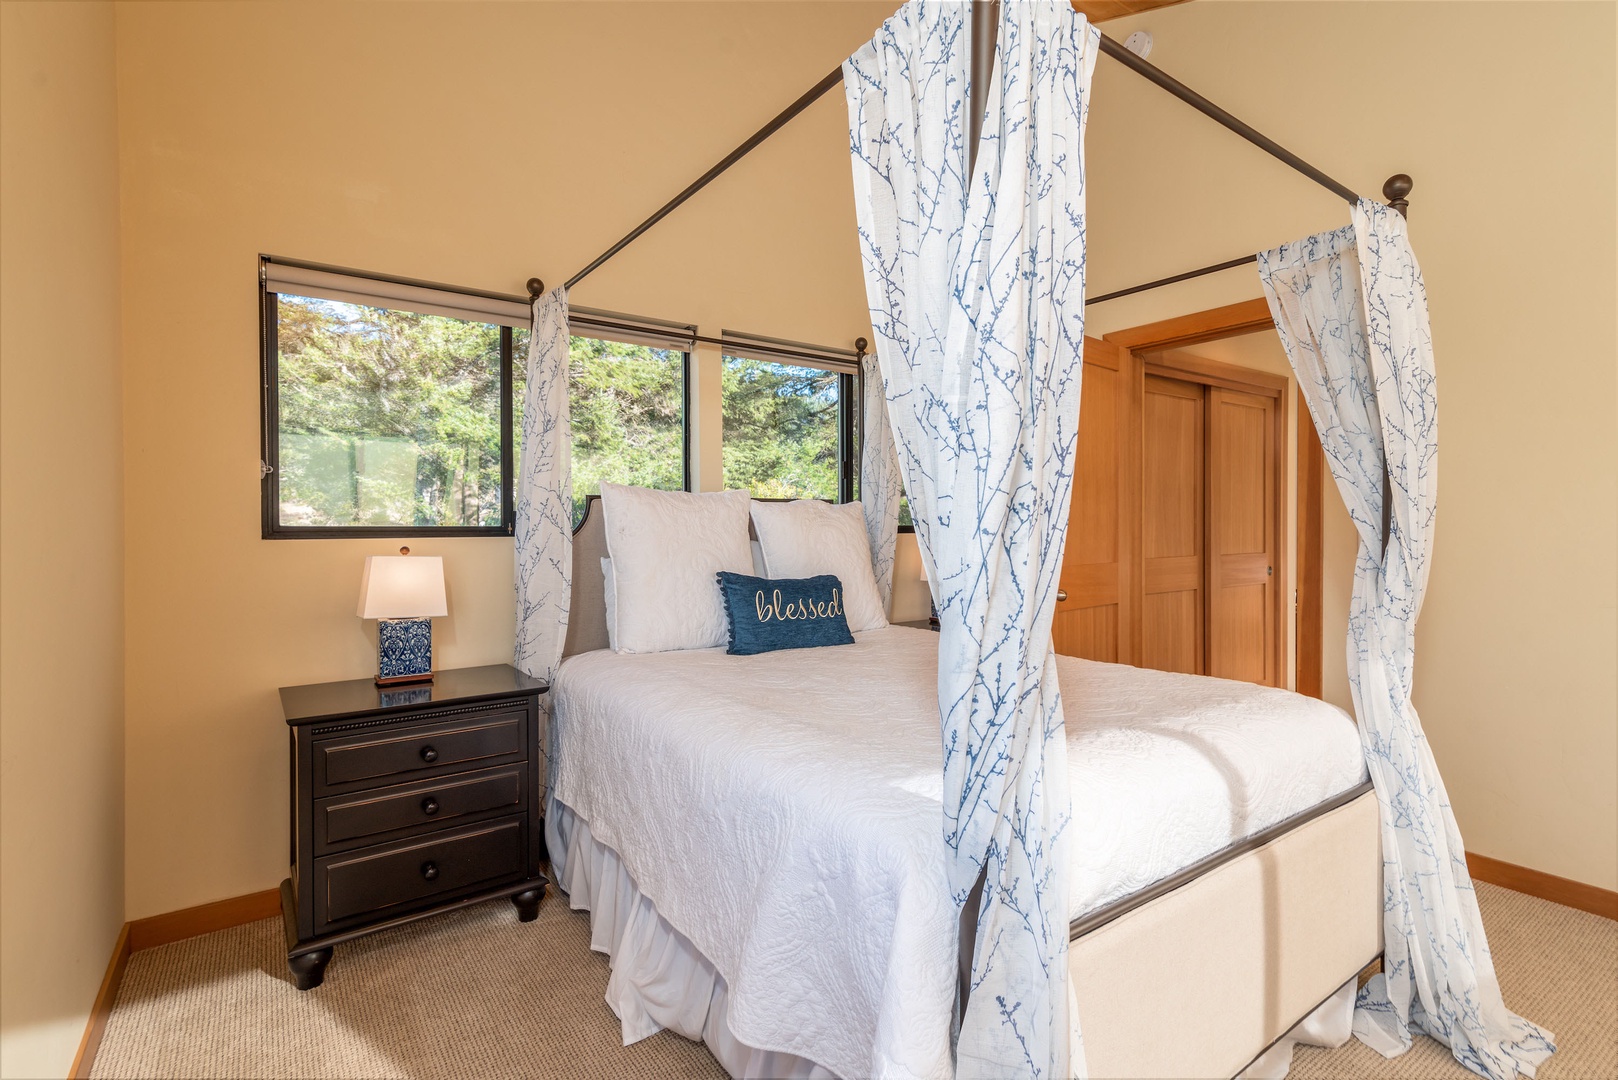 2nd bedroom: Queen bed and ocean views